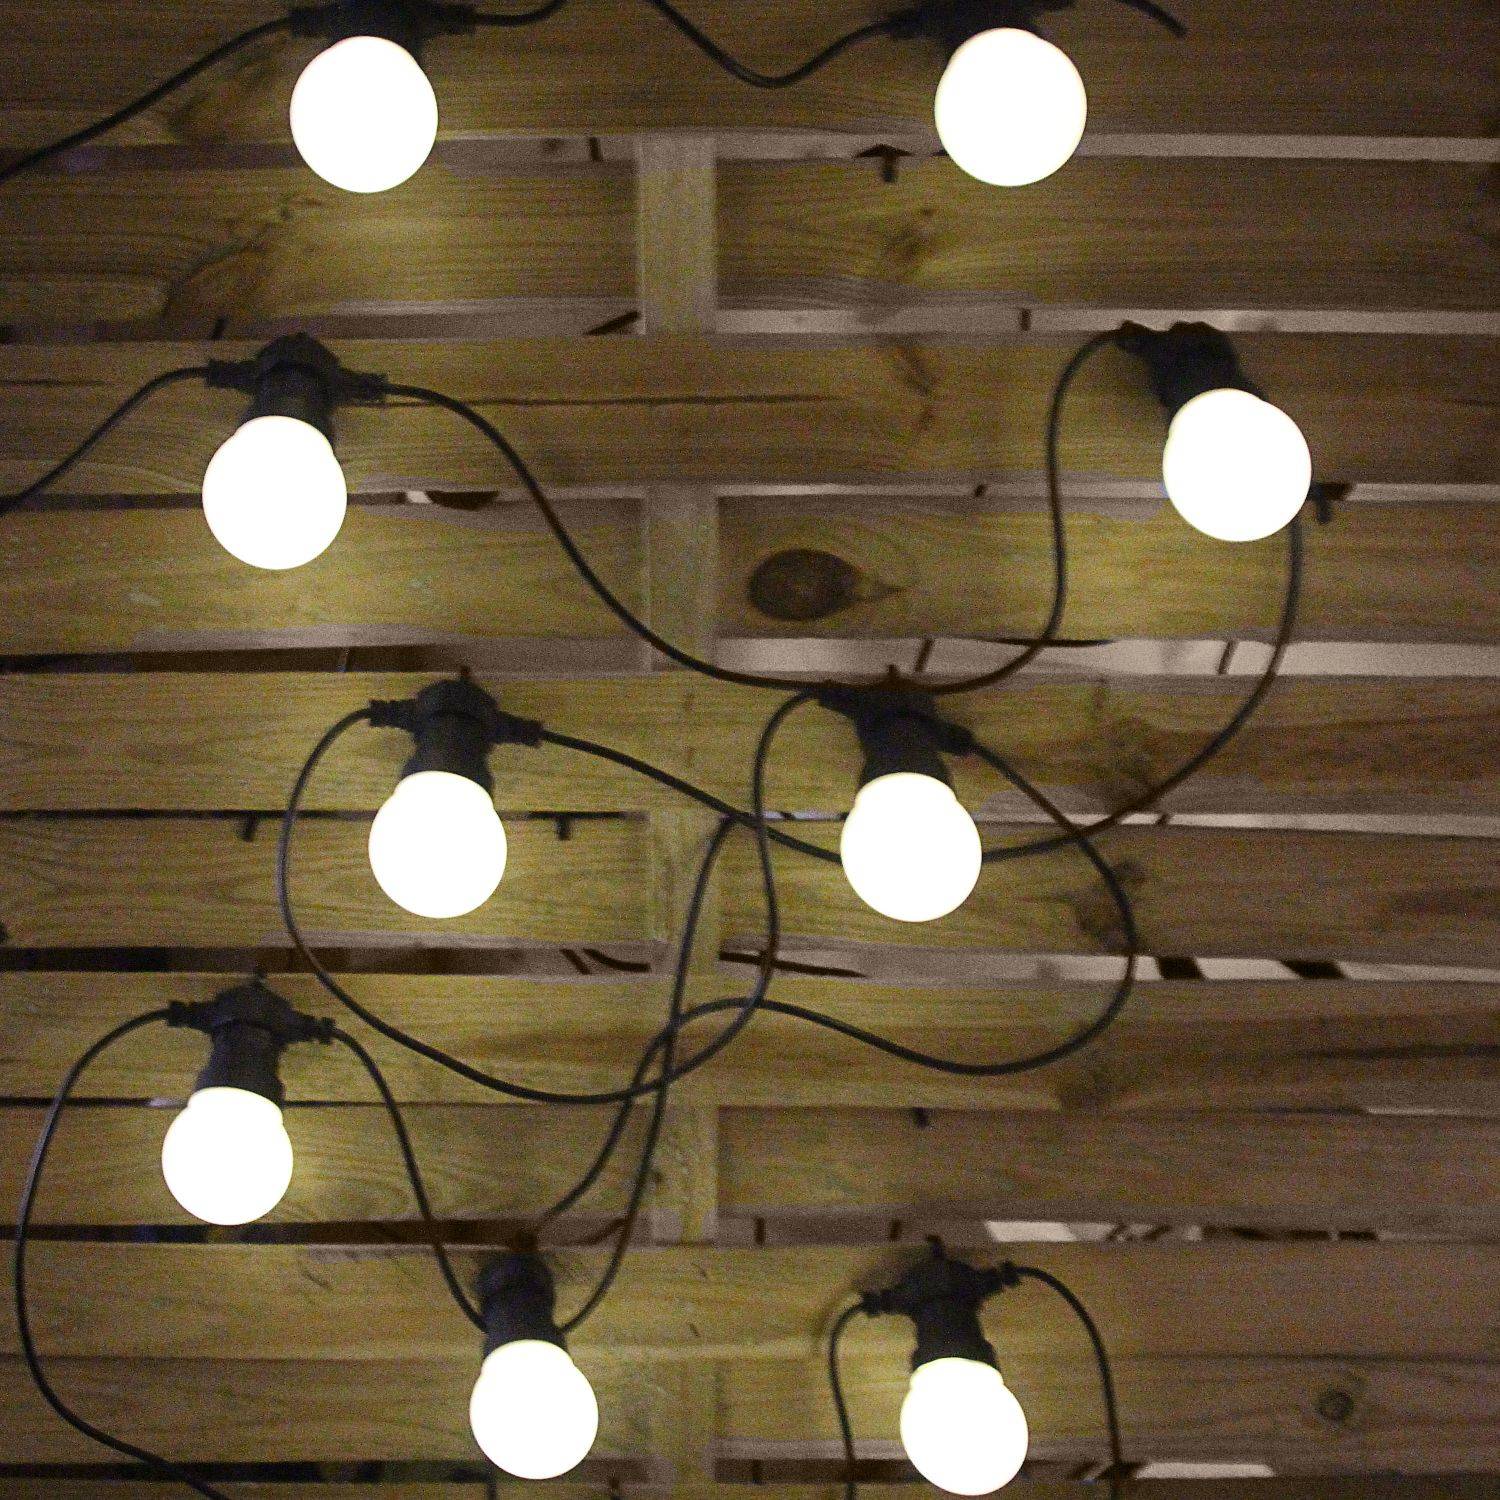 HERACLES - Luz ao ar livre com 10 lâmpadas, 50 LEDs braco, funcionamento a pilhas, função temporizador, 8 modos, 4,5 m de comprimento Photo1